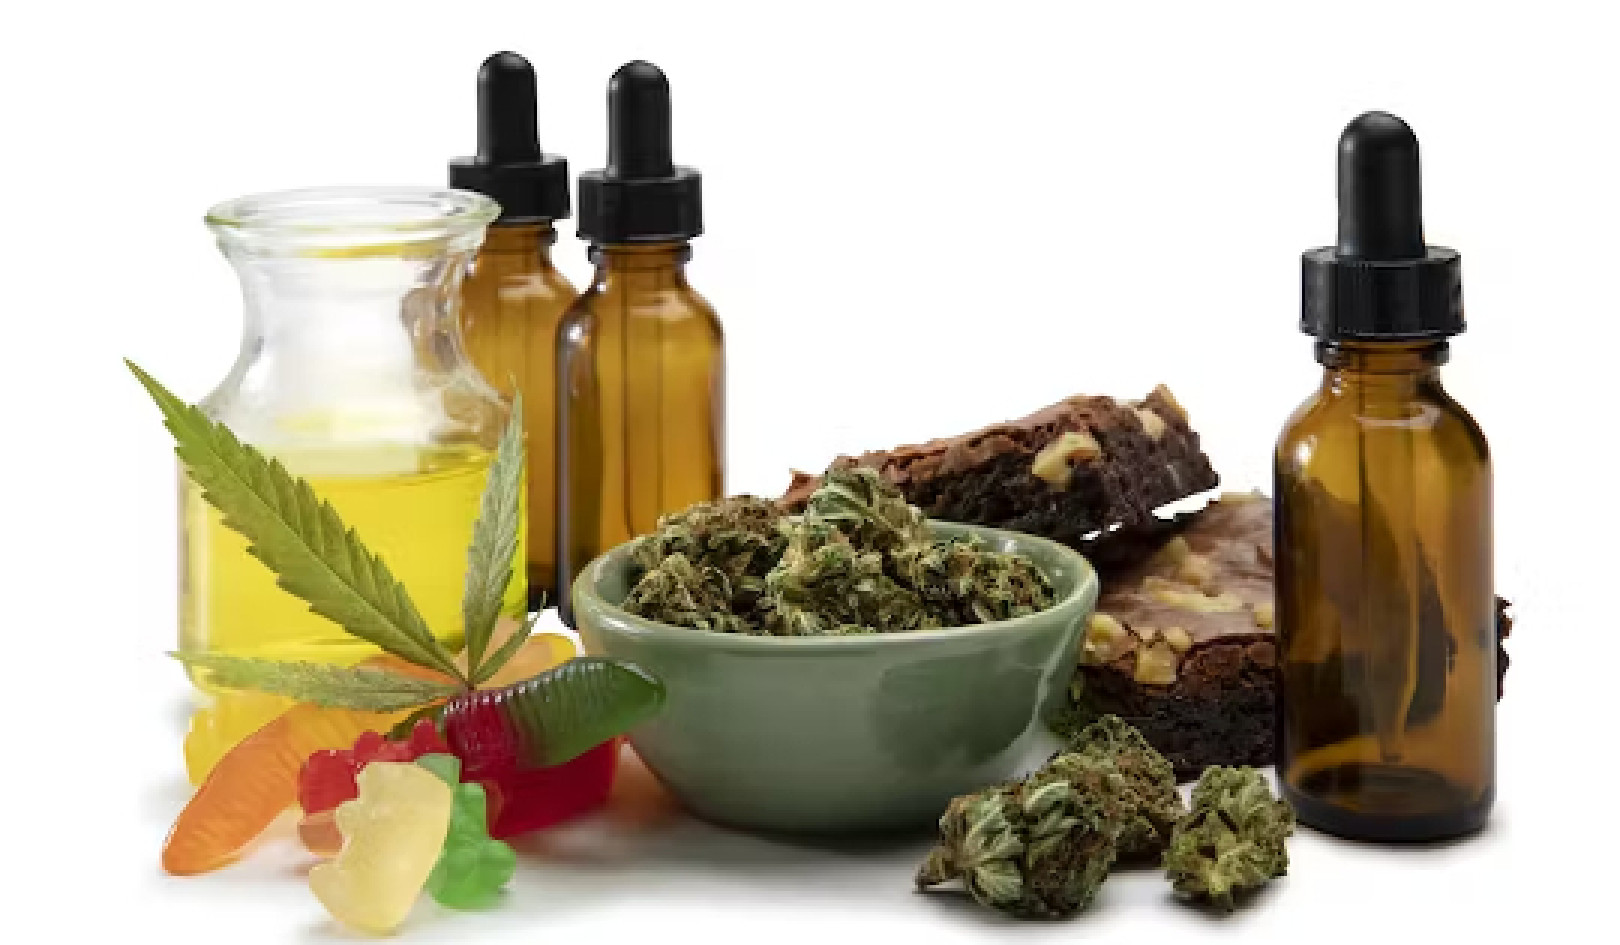 Deux immunologistes révèlent les merveilles et les dangers des produits à base de cannabis